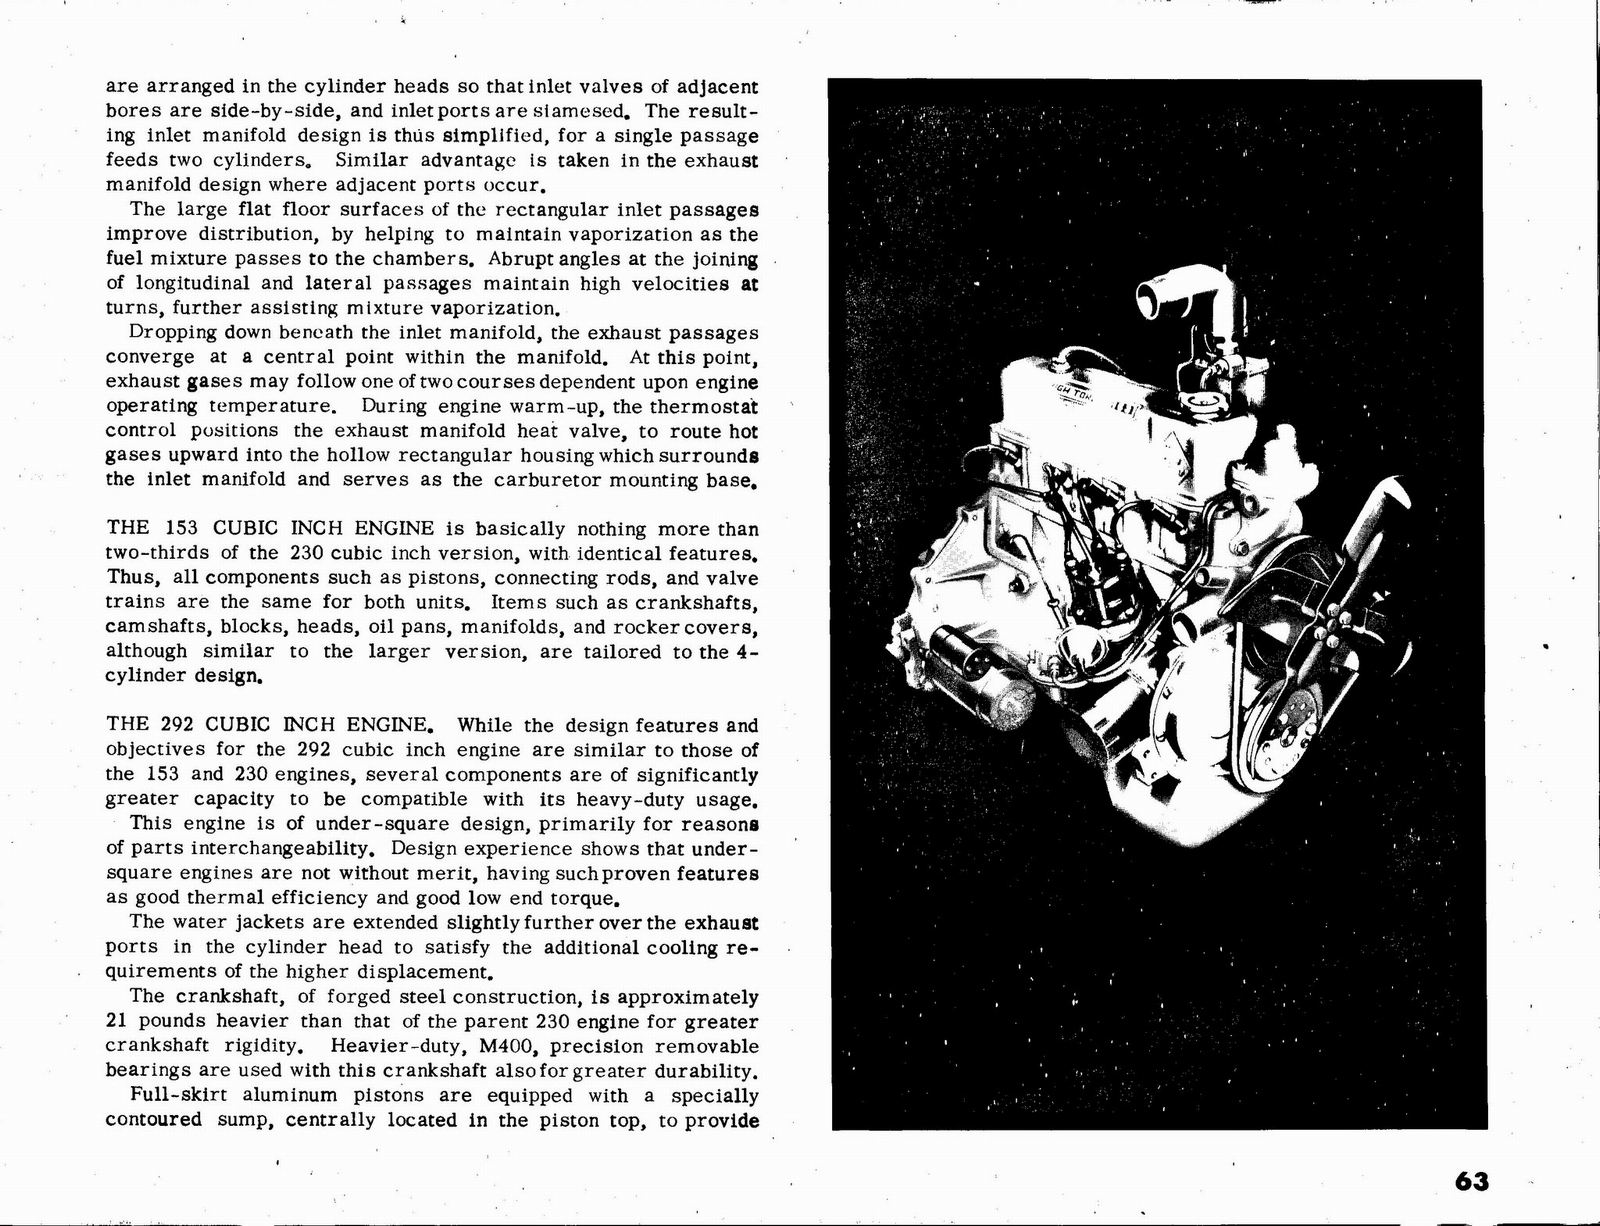 n_1963 Chevrolet Truck Engineering Features-63.jpg